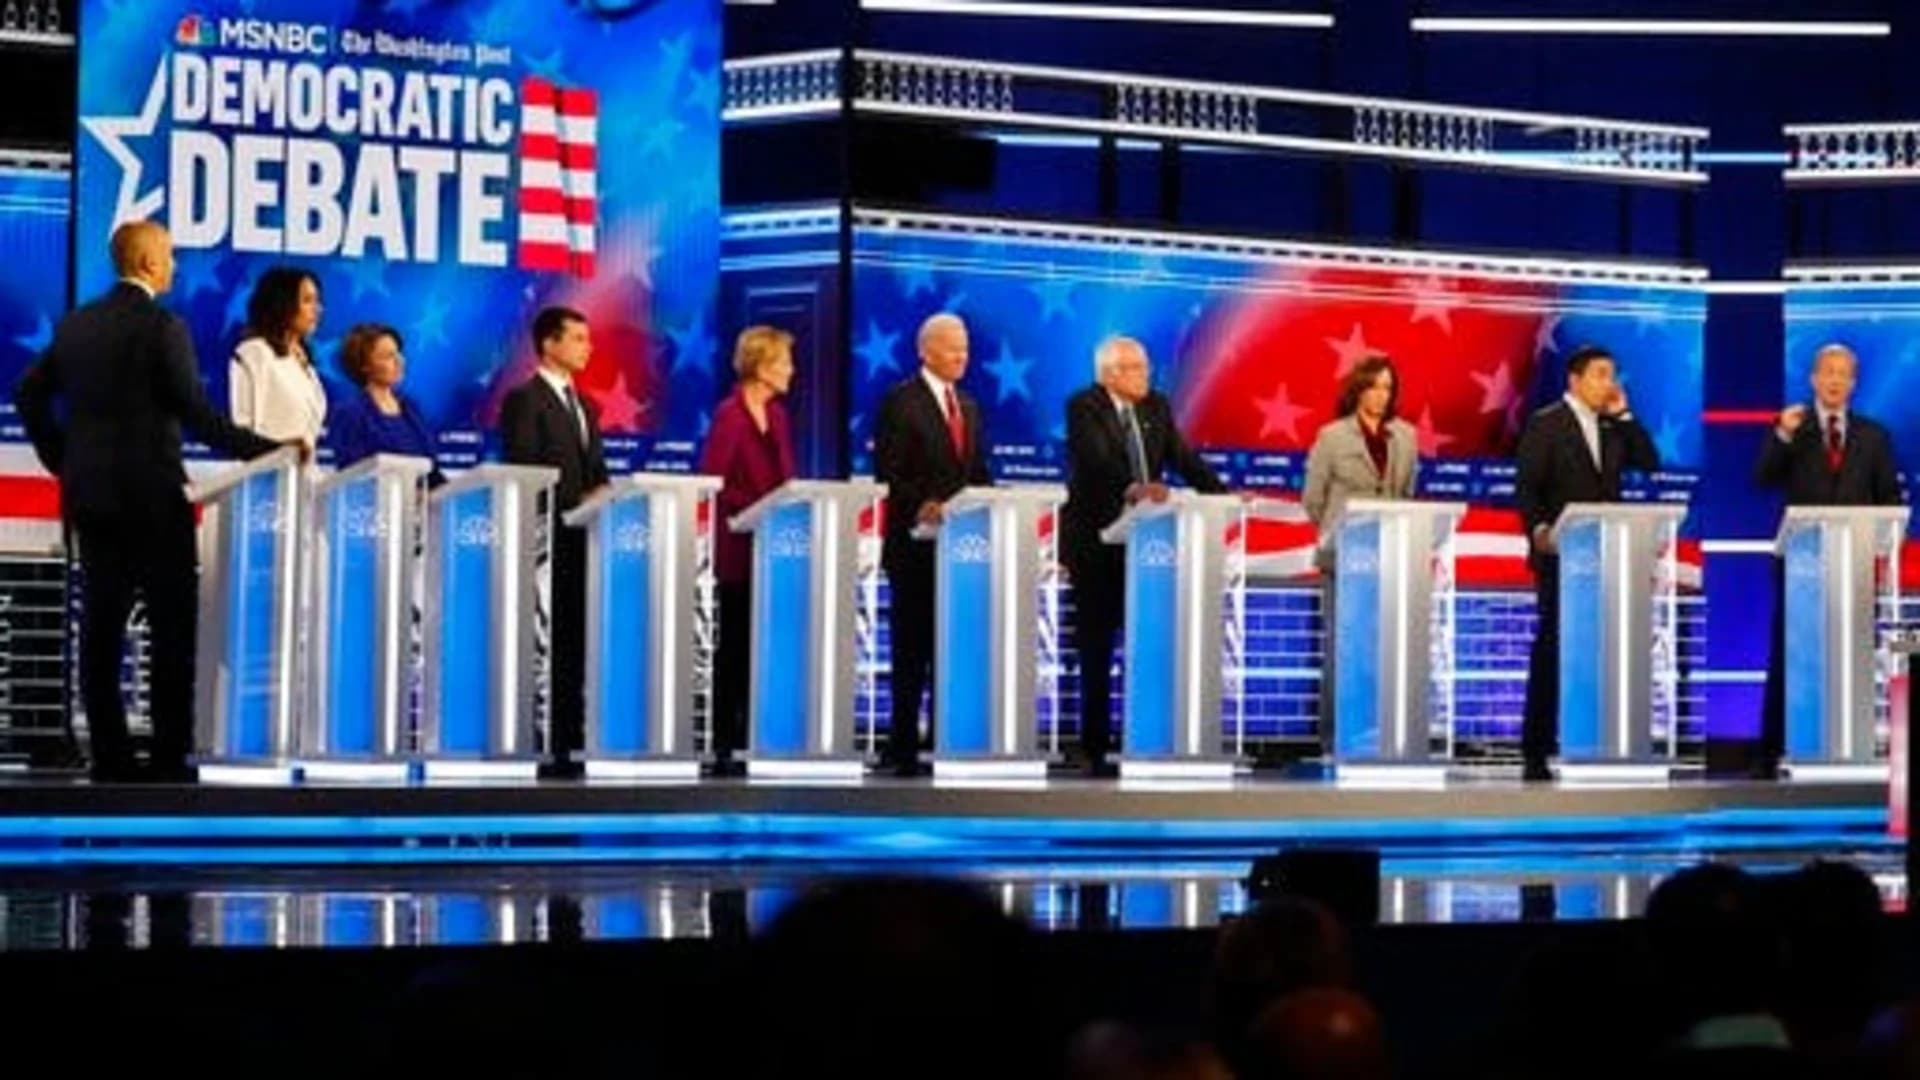 Takeaways from the Democratic presidential debate